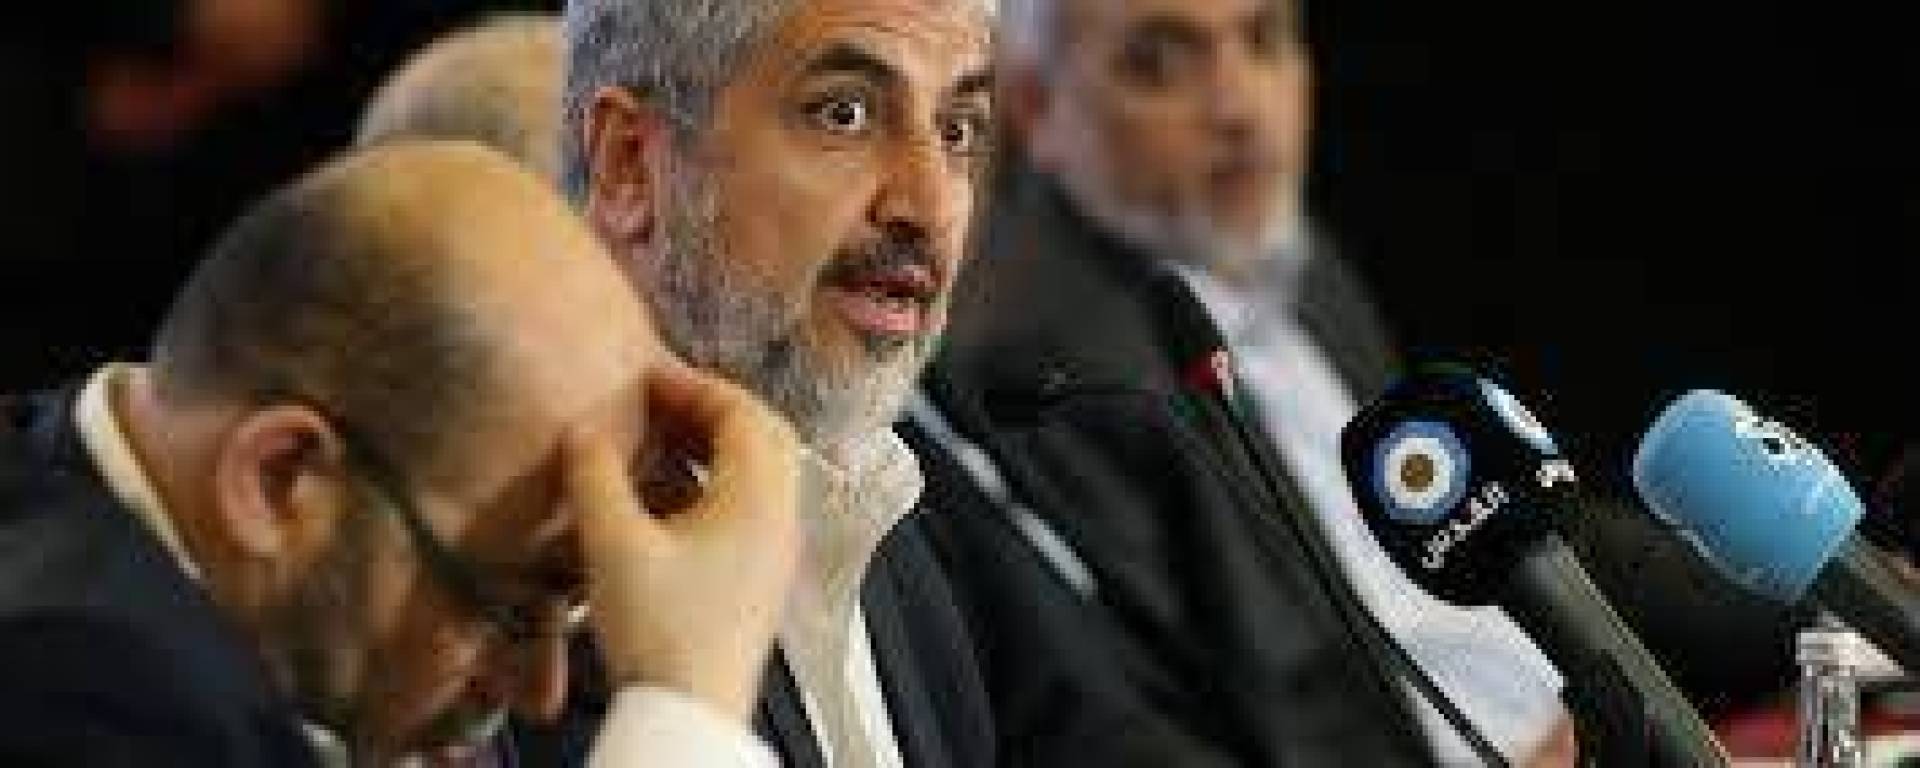 حماس توضح تصريحات خالد مشعل حول الاعتراف بإسرائيل والهدنة